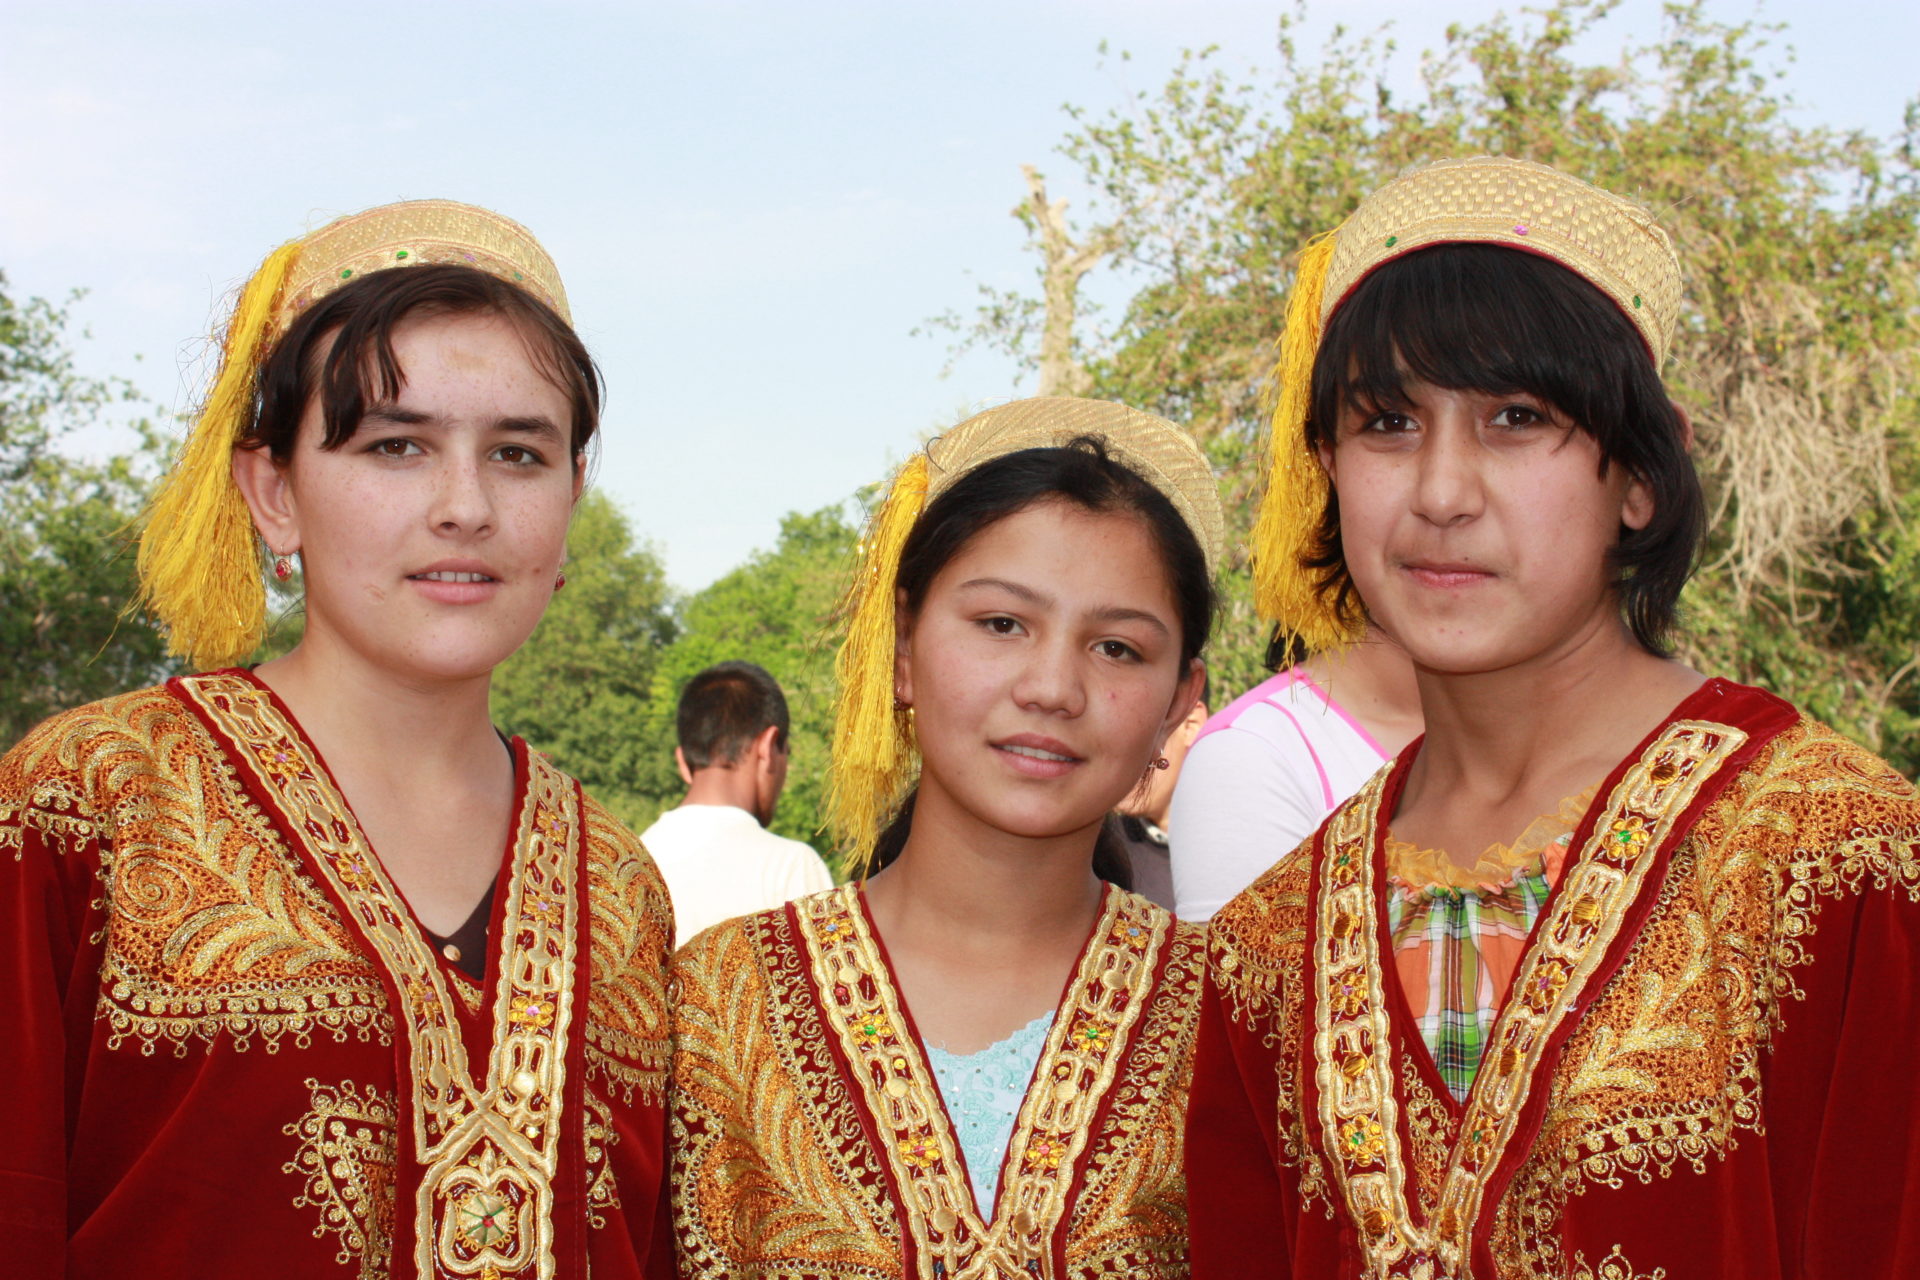 Jenter i tradisjonelle drakter i Usbekistan.